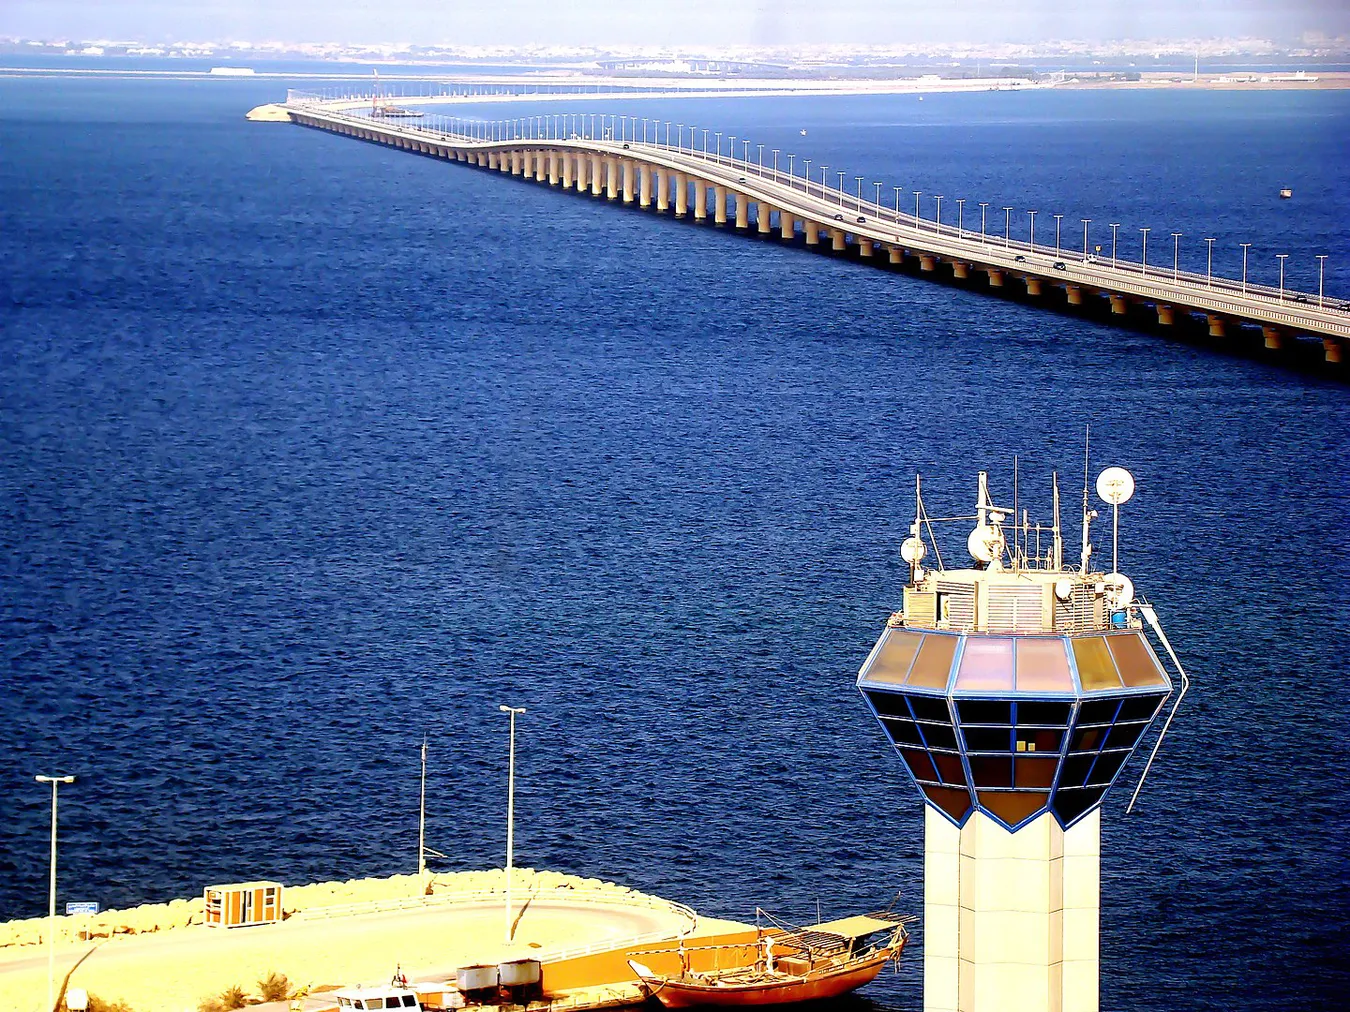 Puente del Rey Fahd